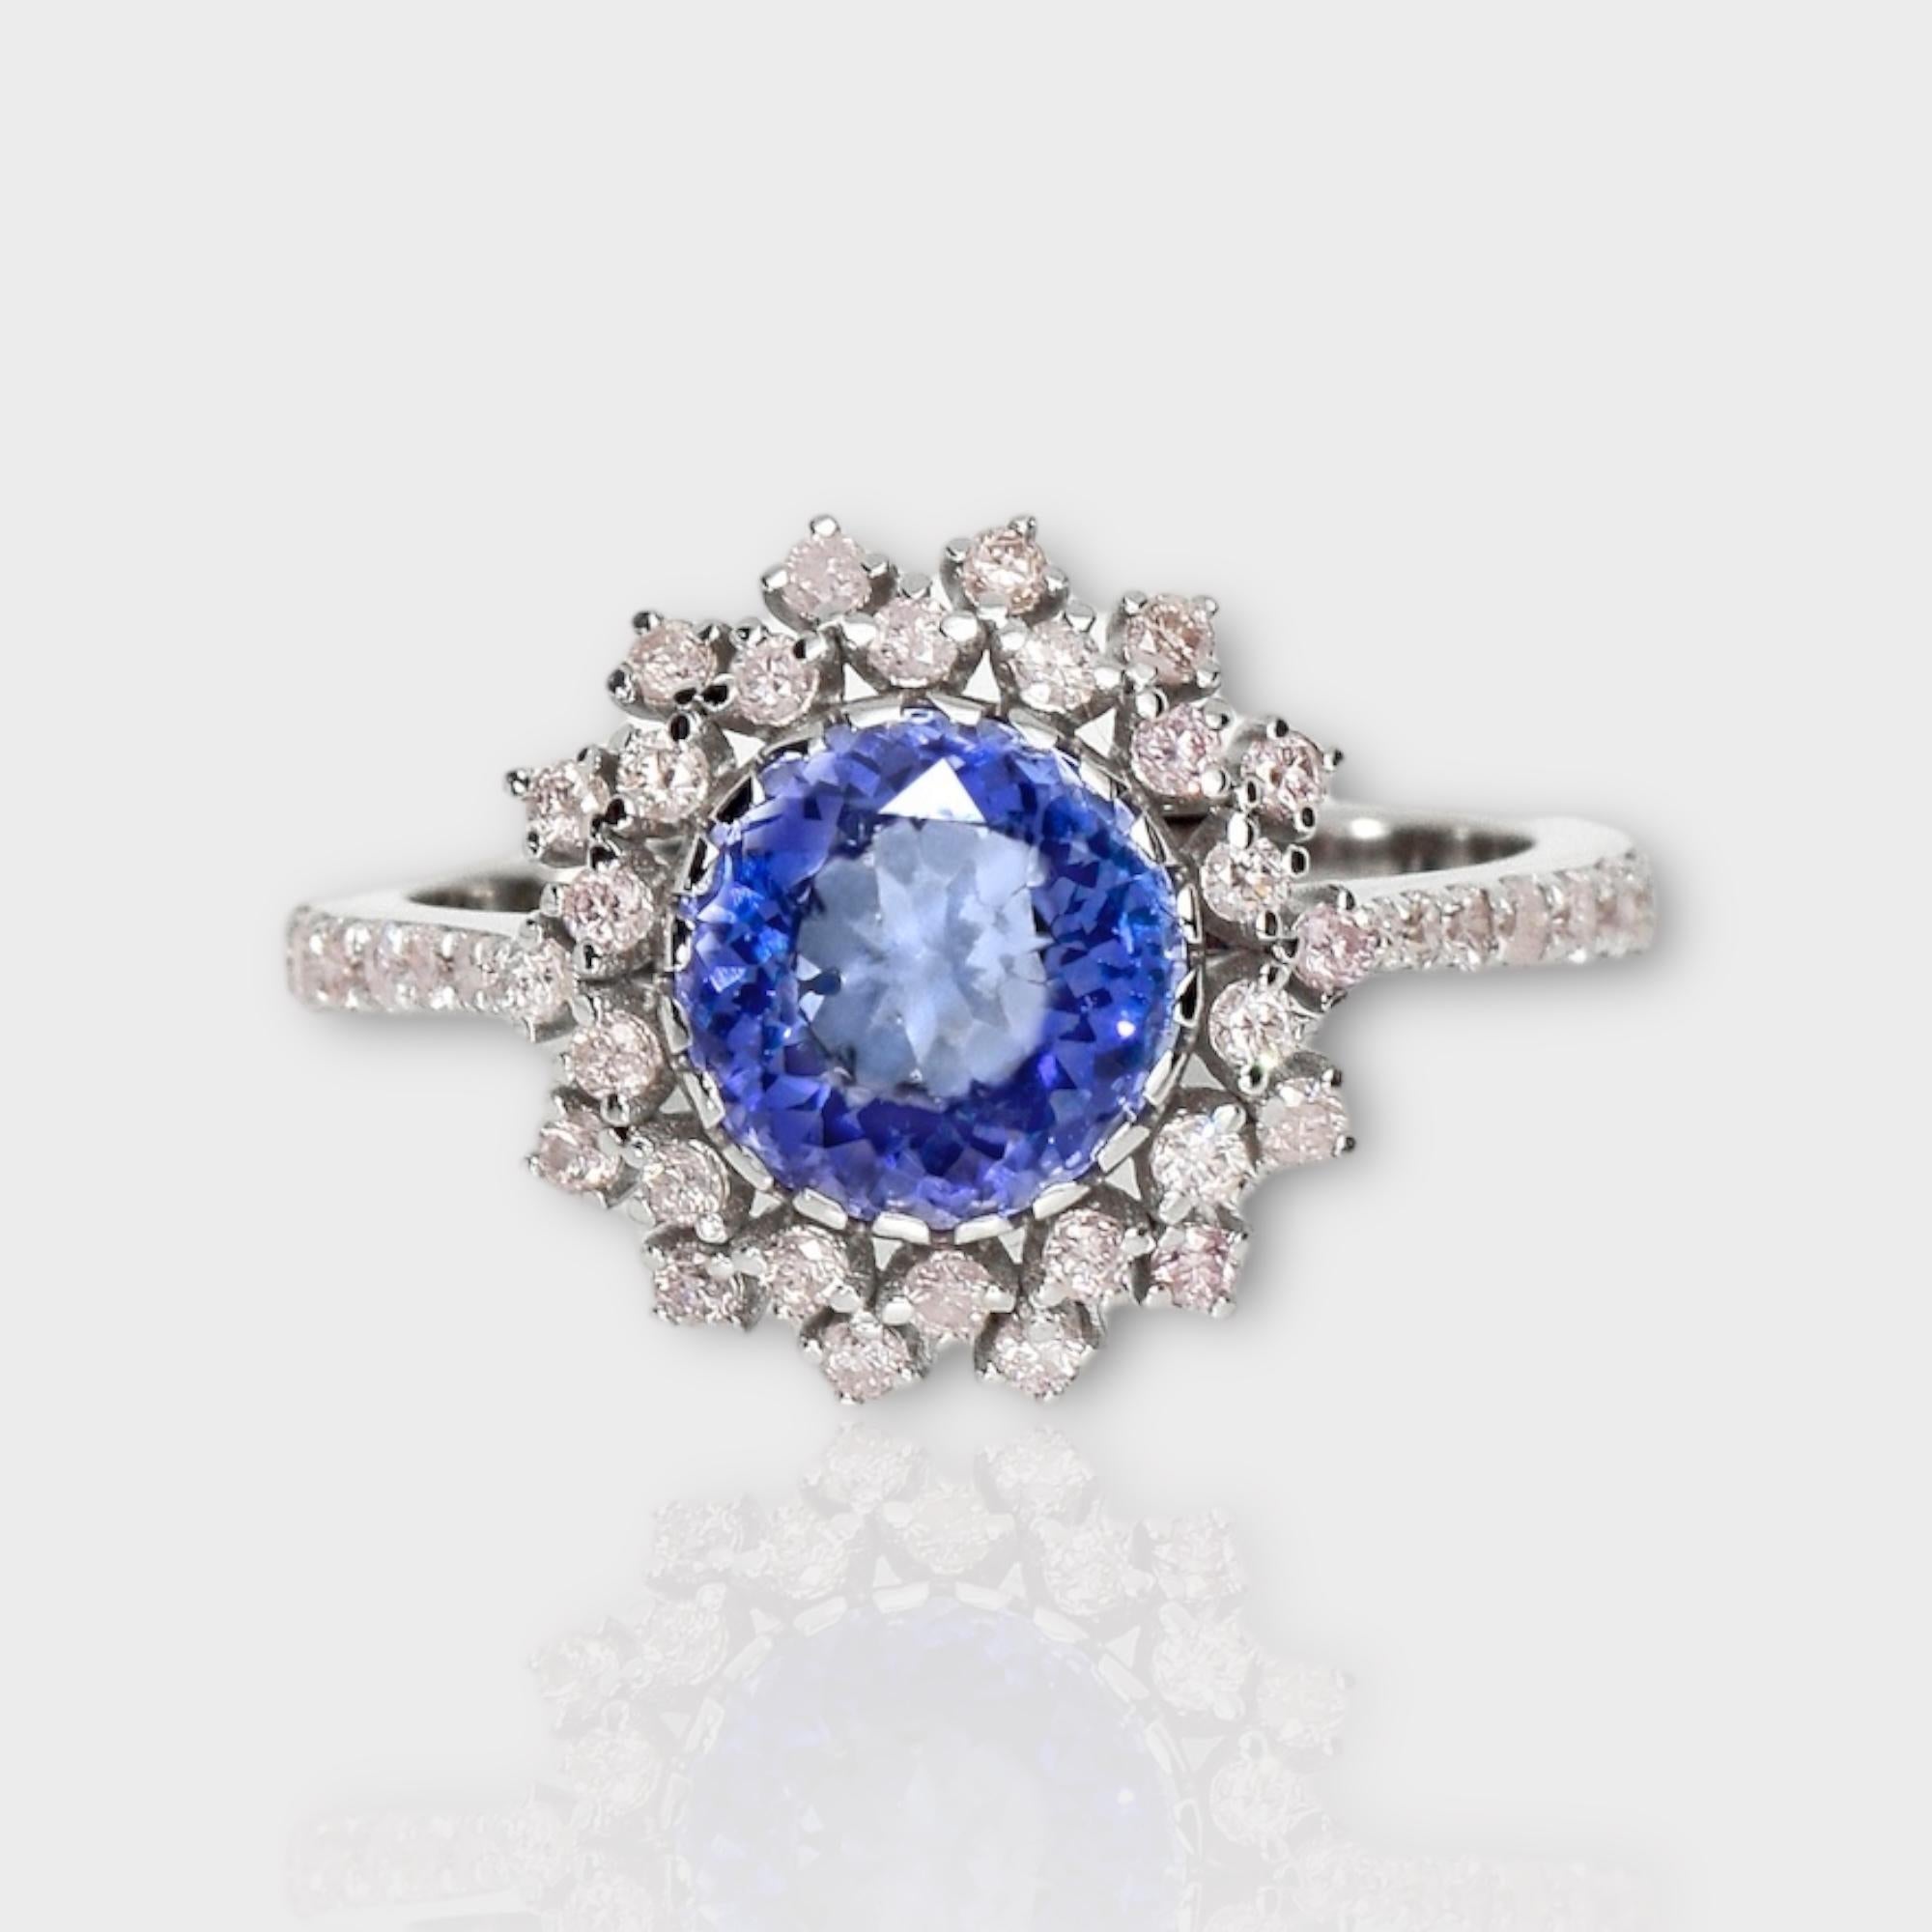 *IGI 14K 2.33 ct Tansanit&Rosa Diamant Antiker Art Deco Stil Verlobungsring*
Der natürliche, intensiv bläulich-violette Tansanit mit einem Gewicht von 2,33 ct ist der Mittelstein, umgeben von natürlichen, rosafarbenen Diamanten mit einem Gewicht von